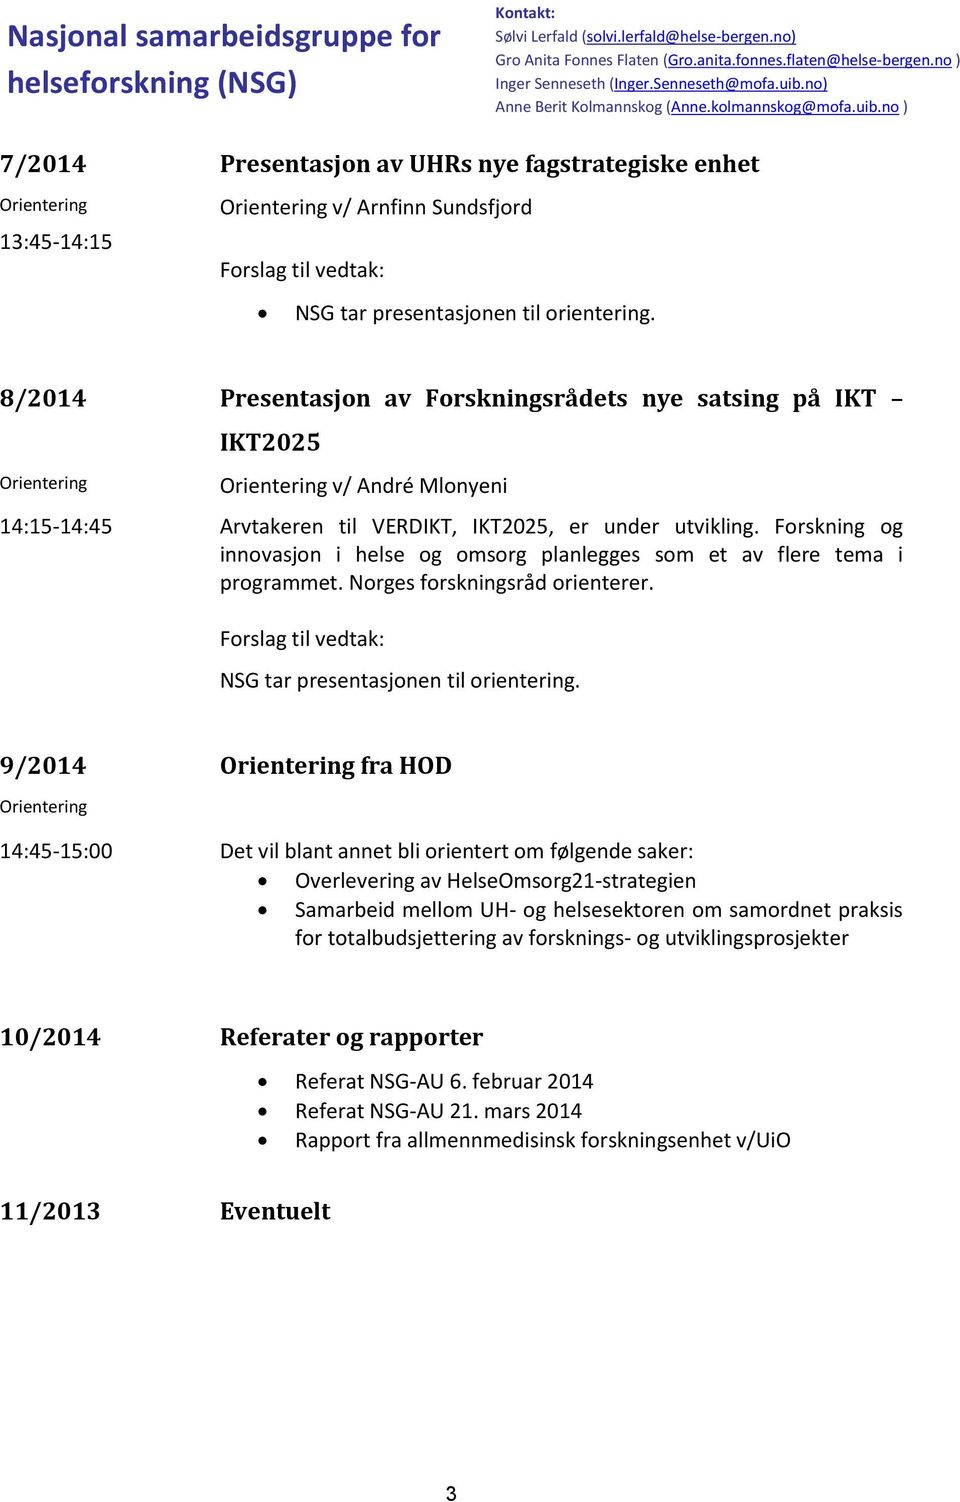 8/2014 Presentasjon av Forskningsrådets nye satsing på IKT IKT2025 v/ André Mlonyeni 14:15-14:45 Arvtakeren til VERDIKT, IKT2025, er under utvikling.